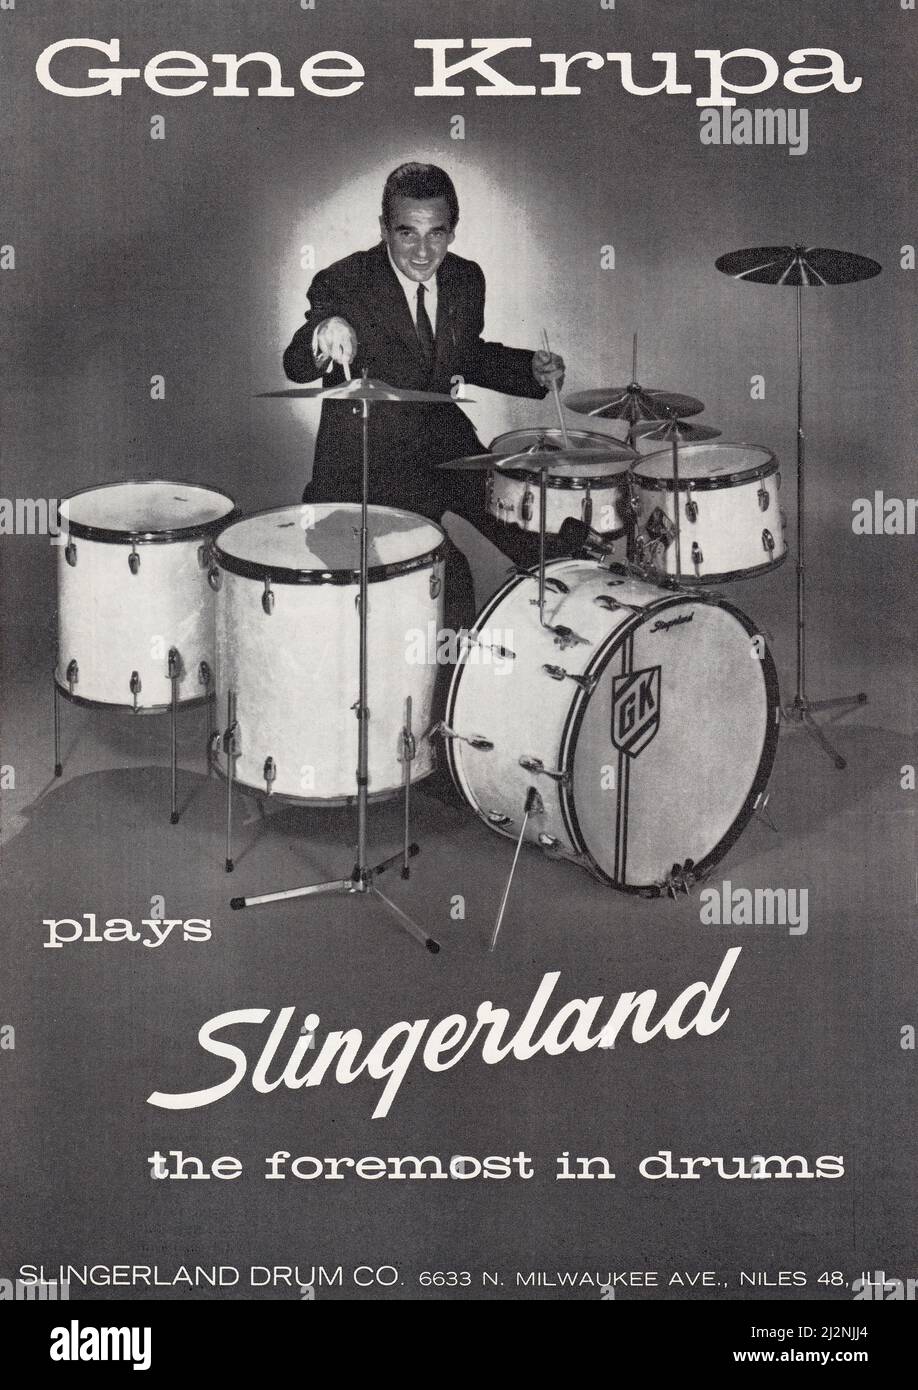 Un annuncio a pagina intera per Slingerland Drums da una rivista di musica americana del 1960 con la leggenda del batterista jazz, gene Krupa. Foto Stock